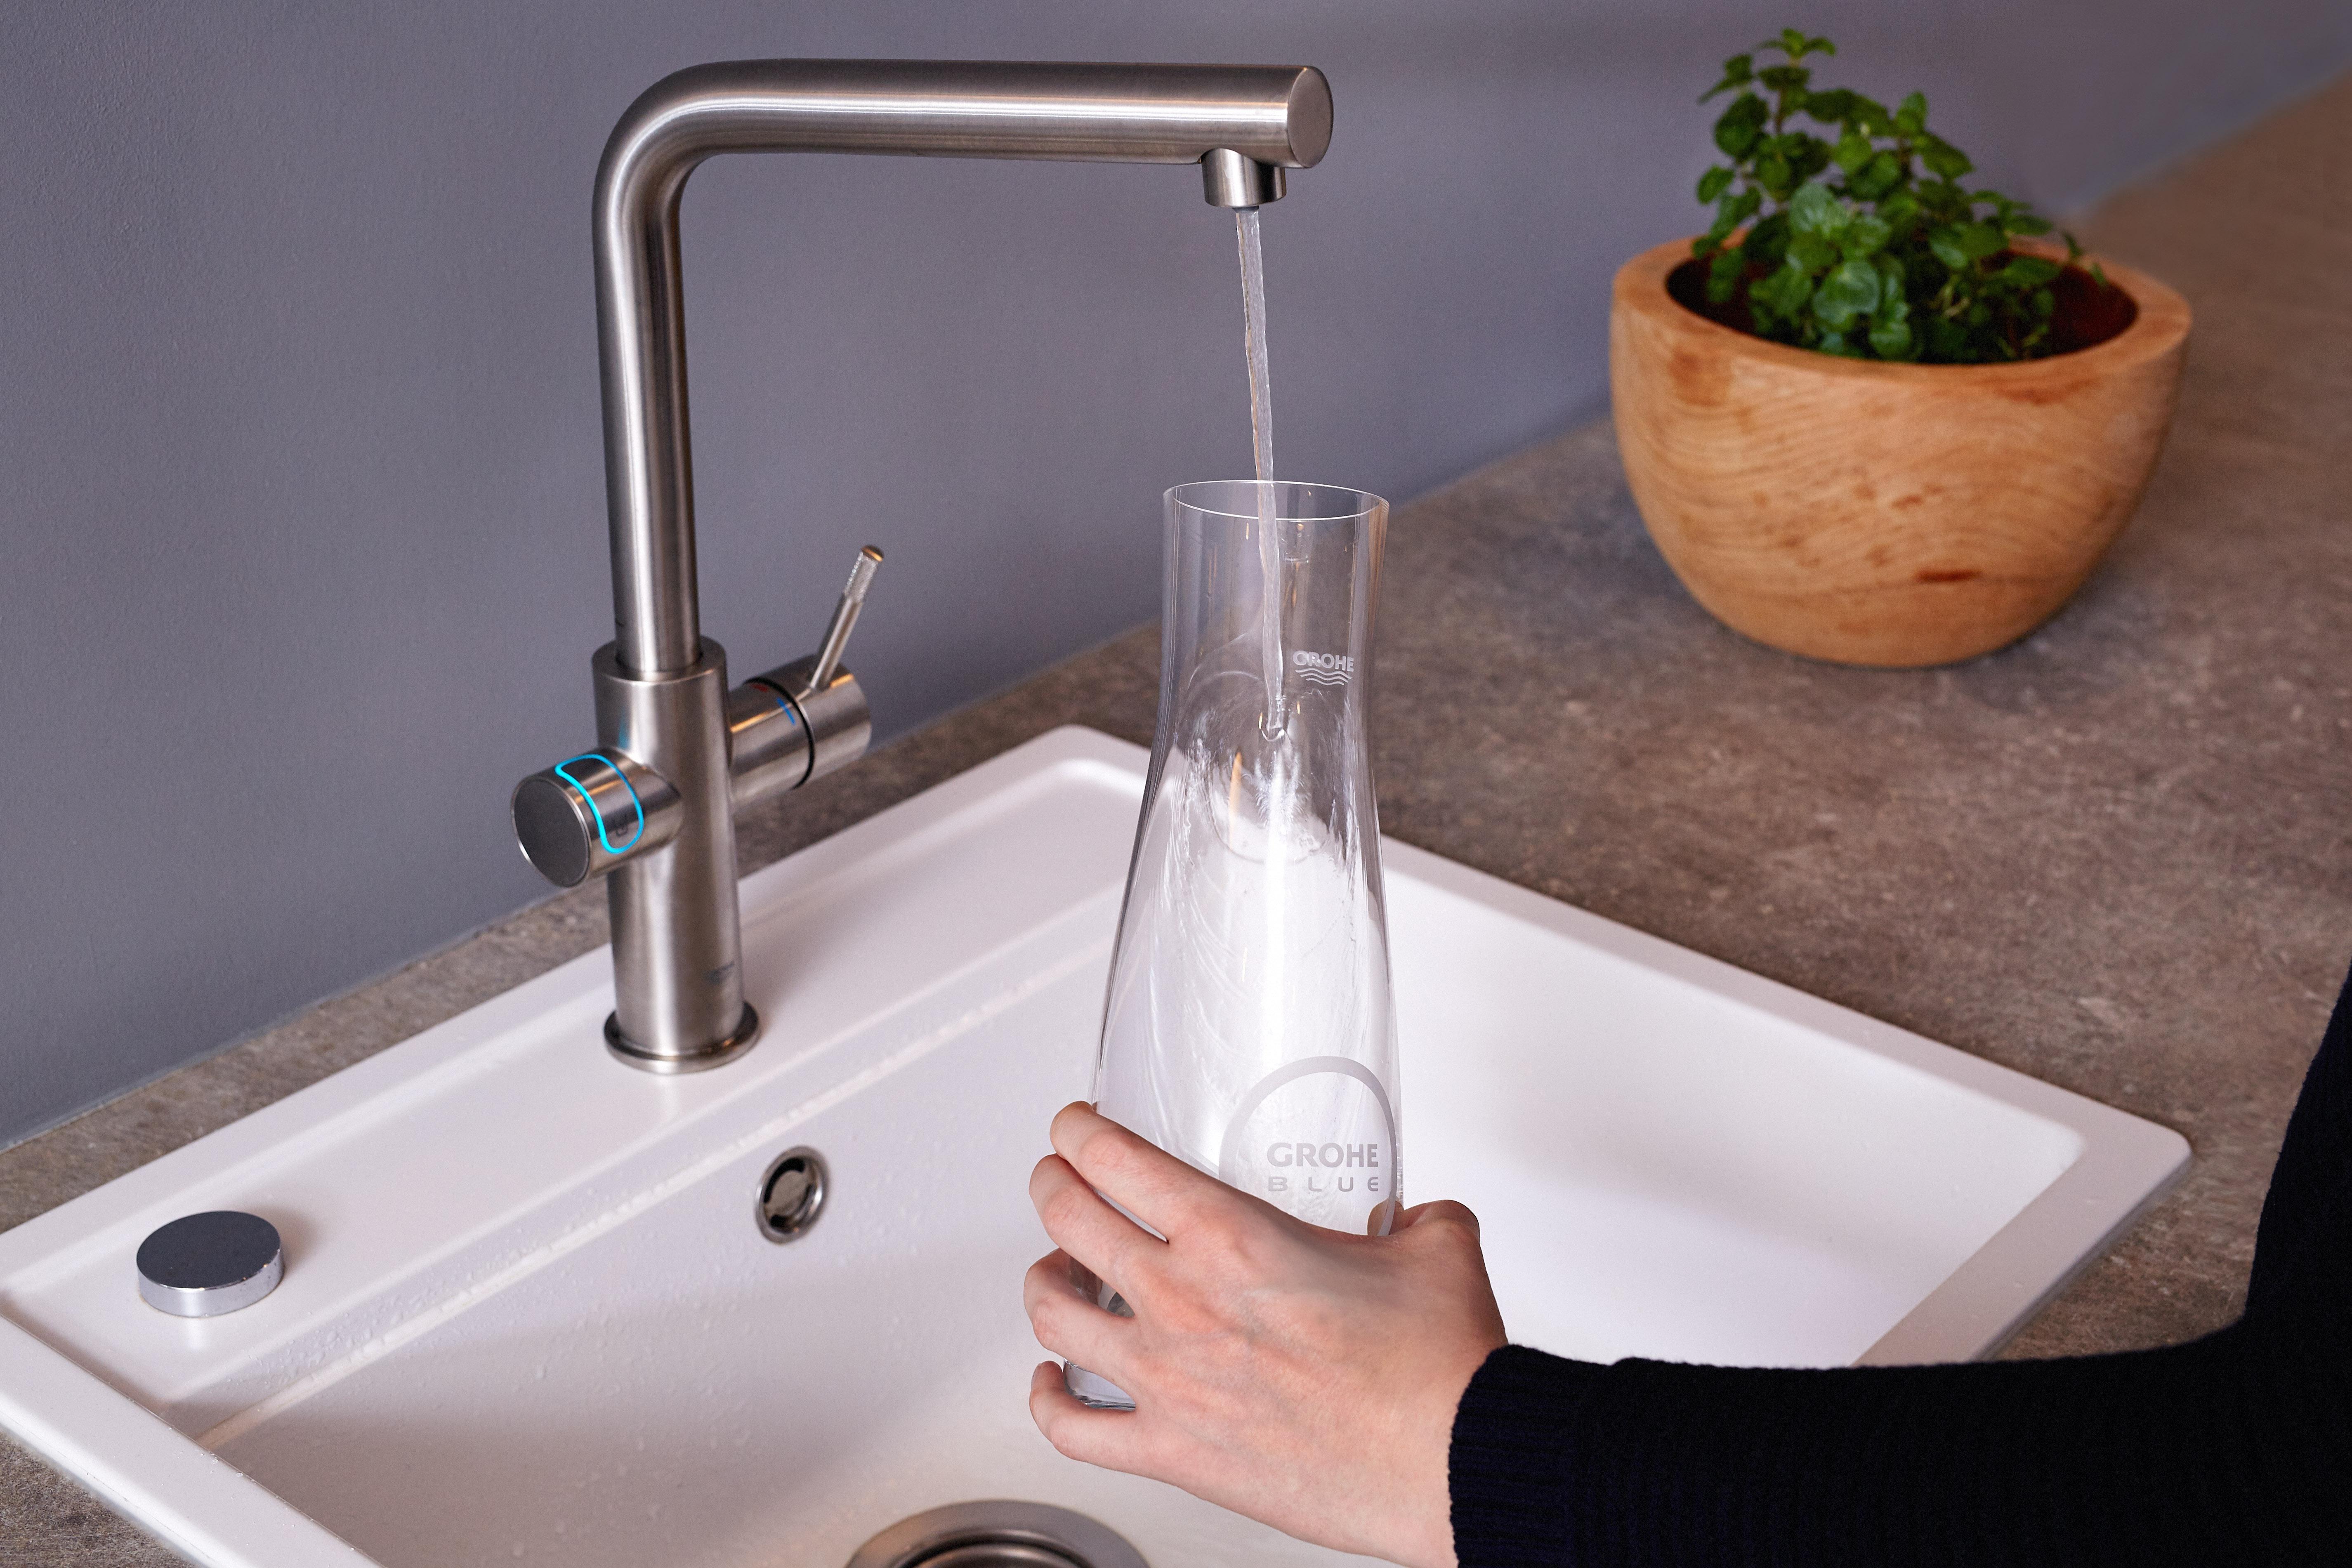 Mit oder ohne? GROHE Blue Home liefert auf Knopfdruck stilles oder prickelndes Trinkwasser #küche #küchenarmatur